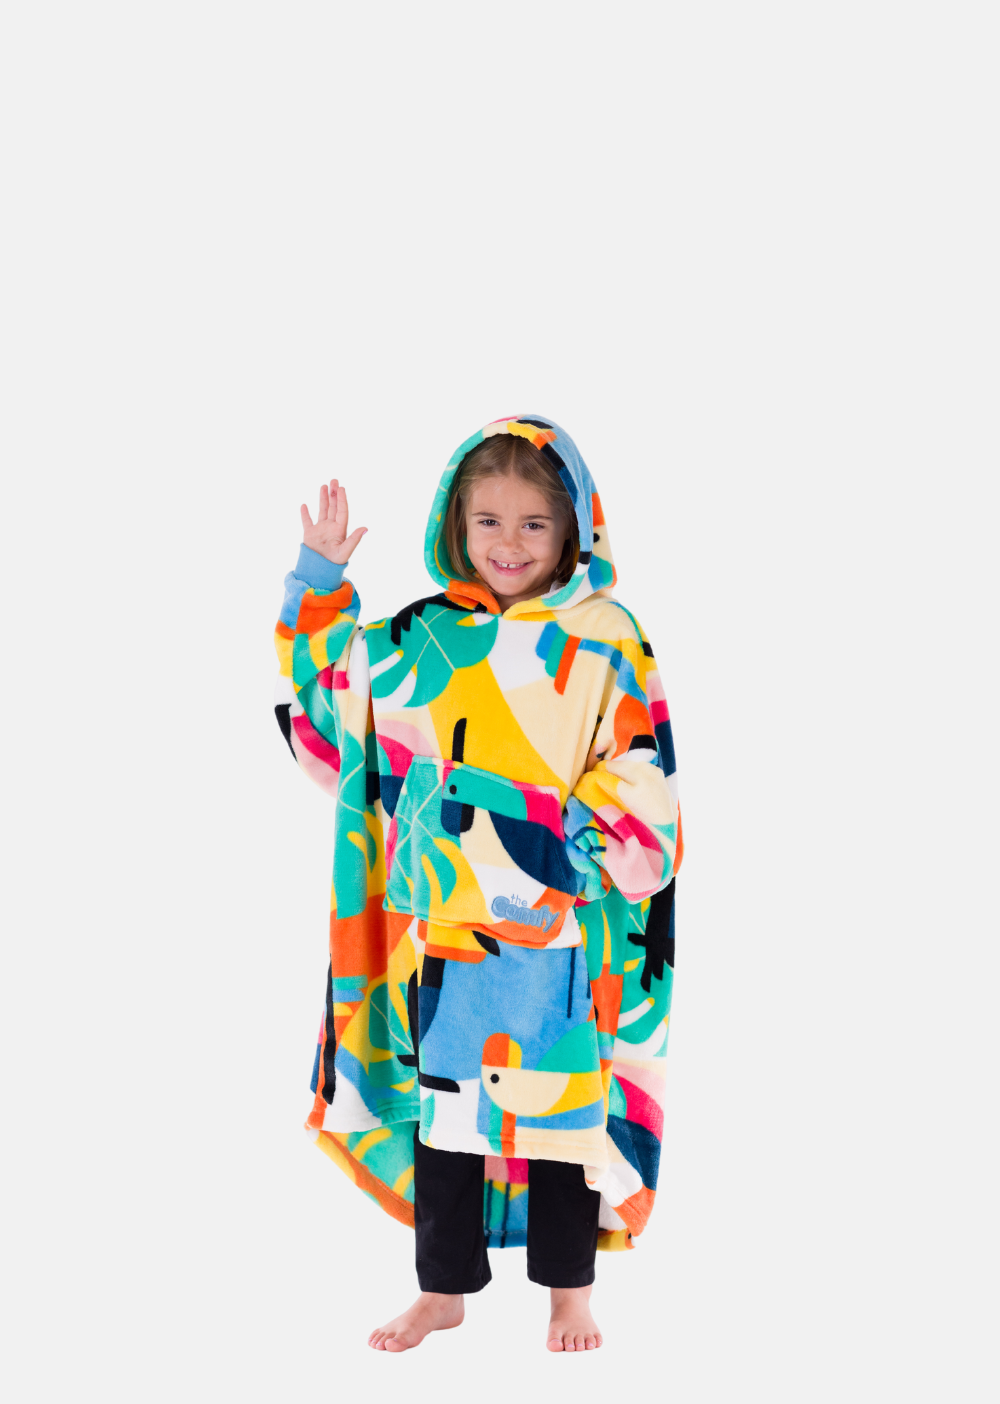 The Comfy Original Jr Oversized Microfiber Wearable Blanket for Kids, Blue